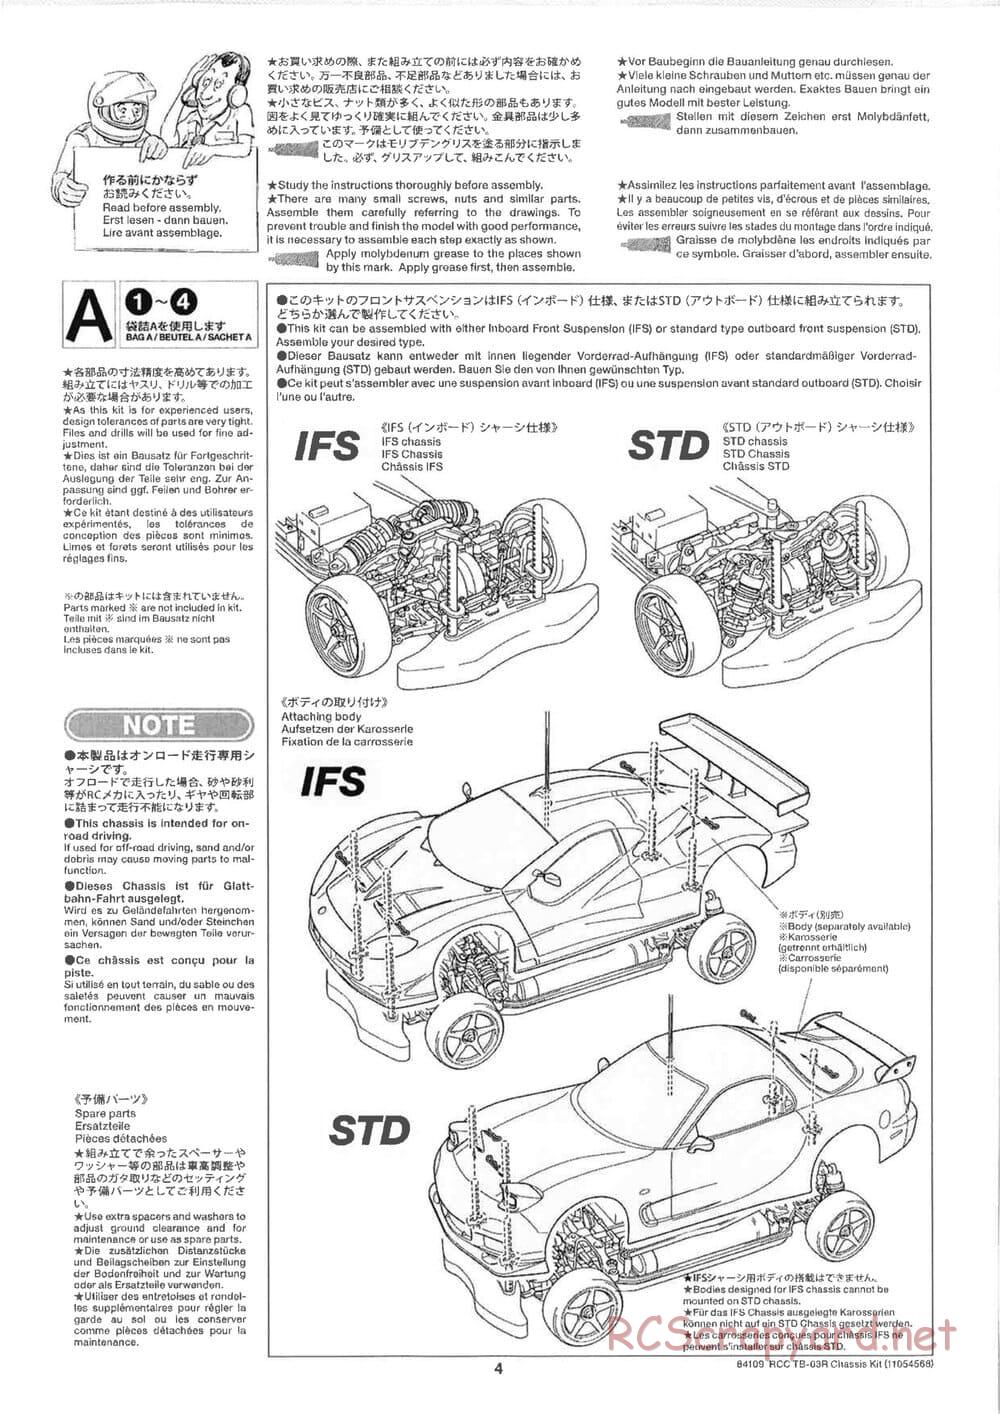 Tamiya - TB-03R Chassis - Manual - Page 4